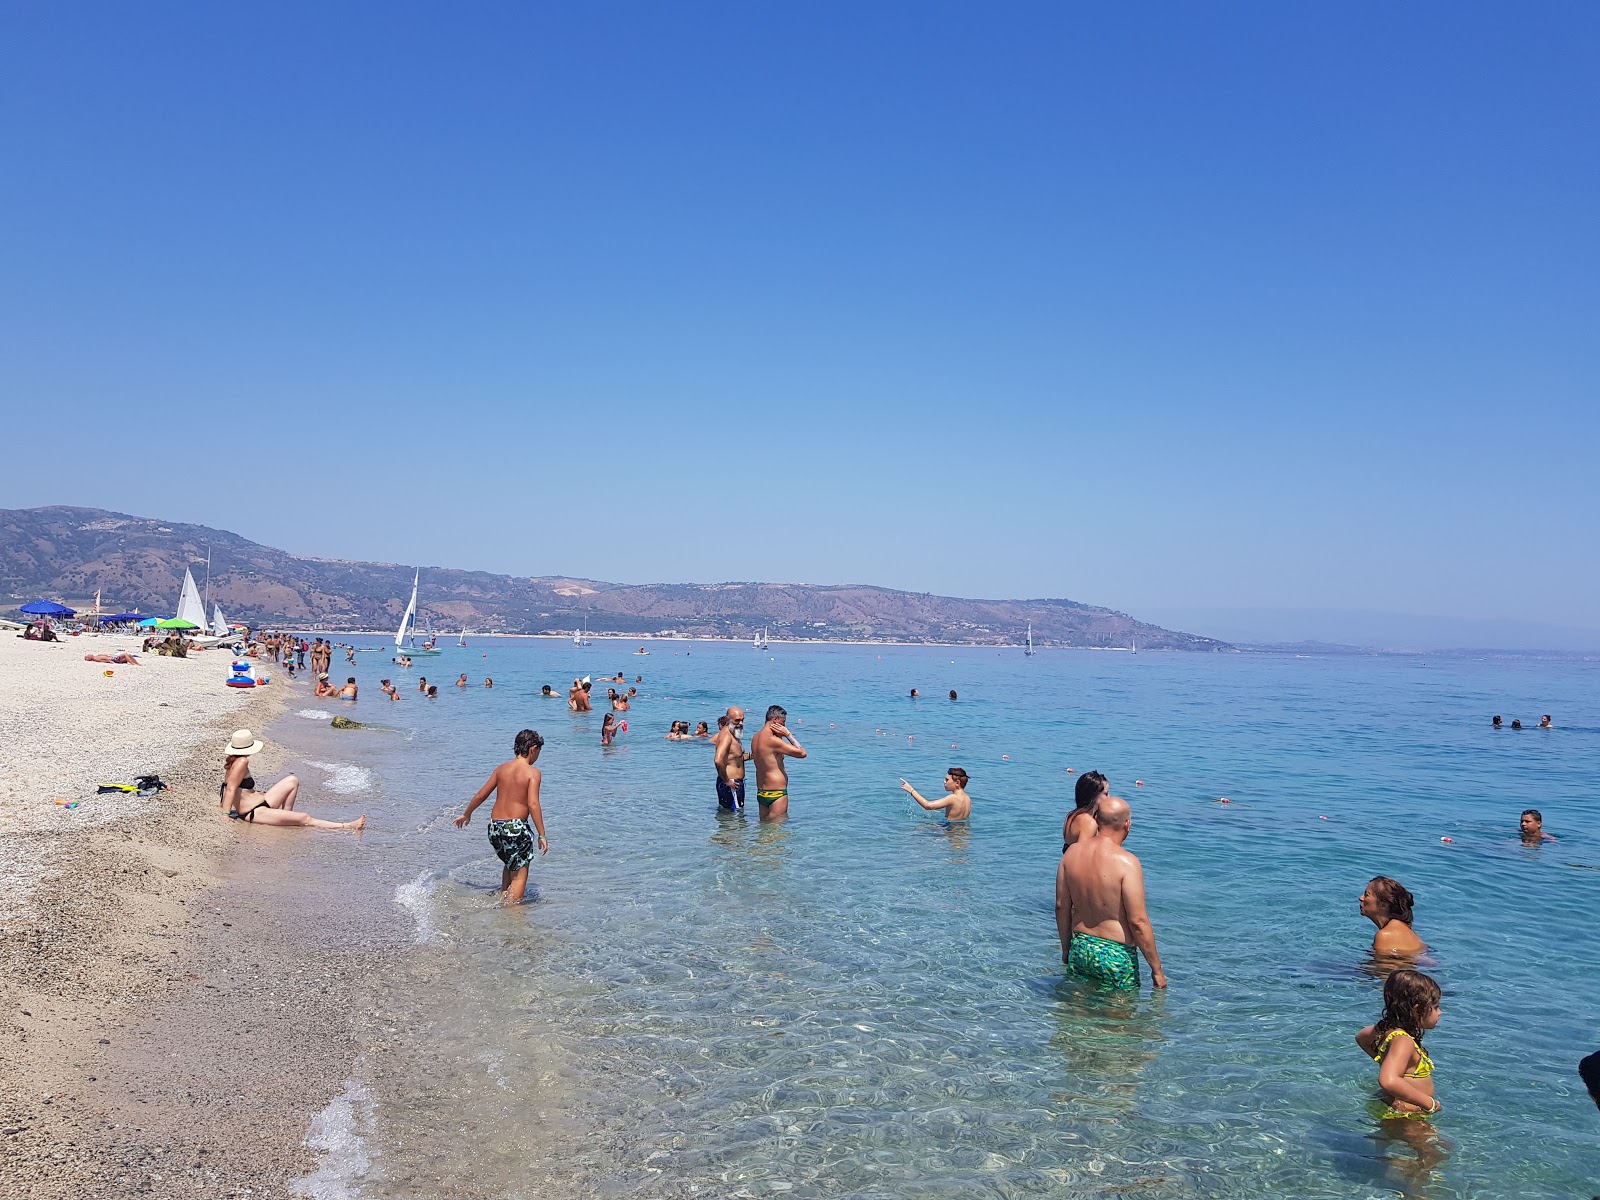 Spiaggia Soverato'in fotoğrafı parlak kum yüzey ile